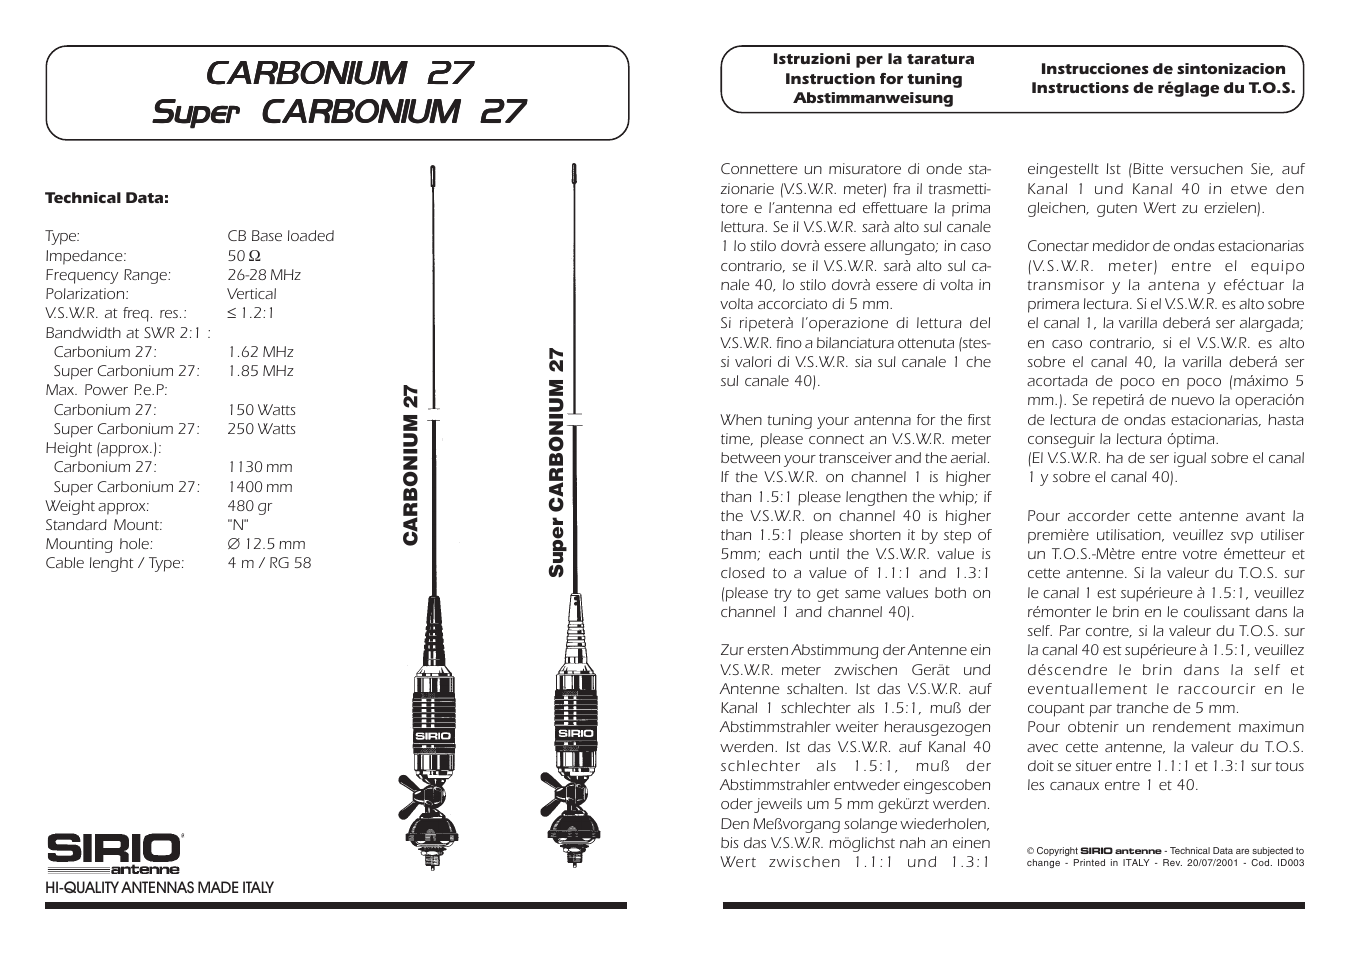 Super Carbonium 27